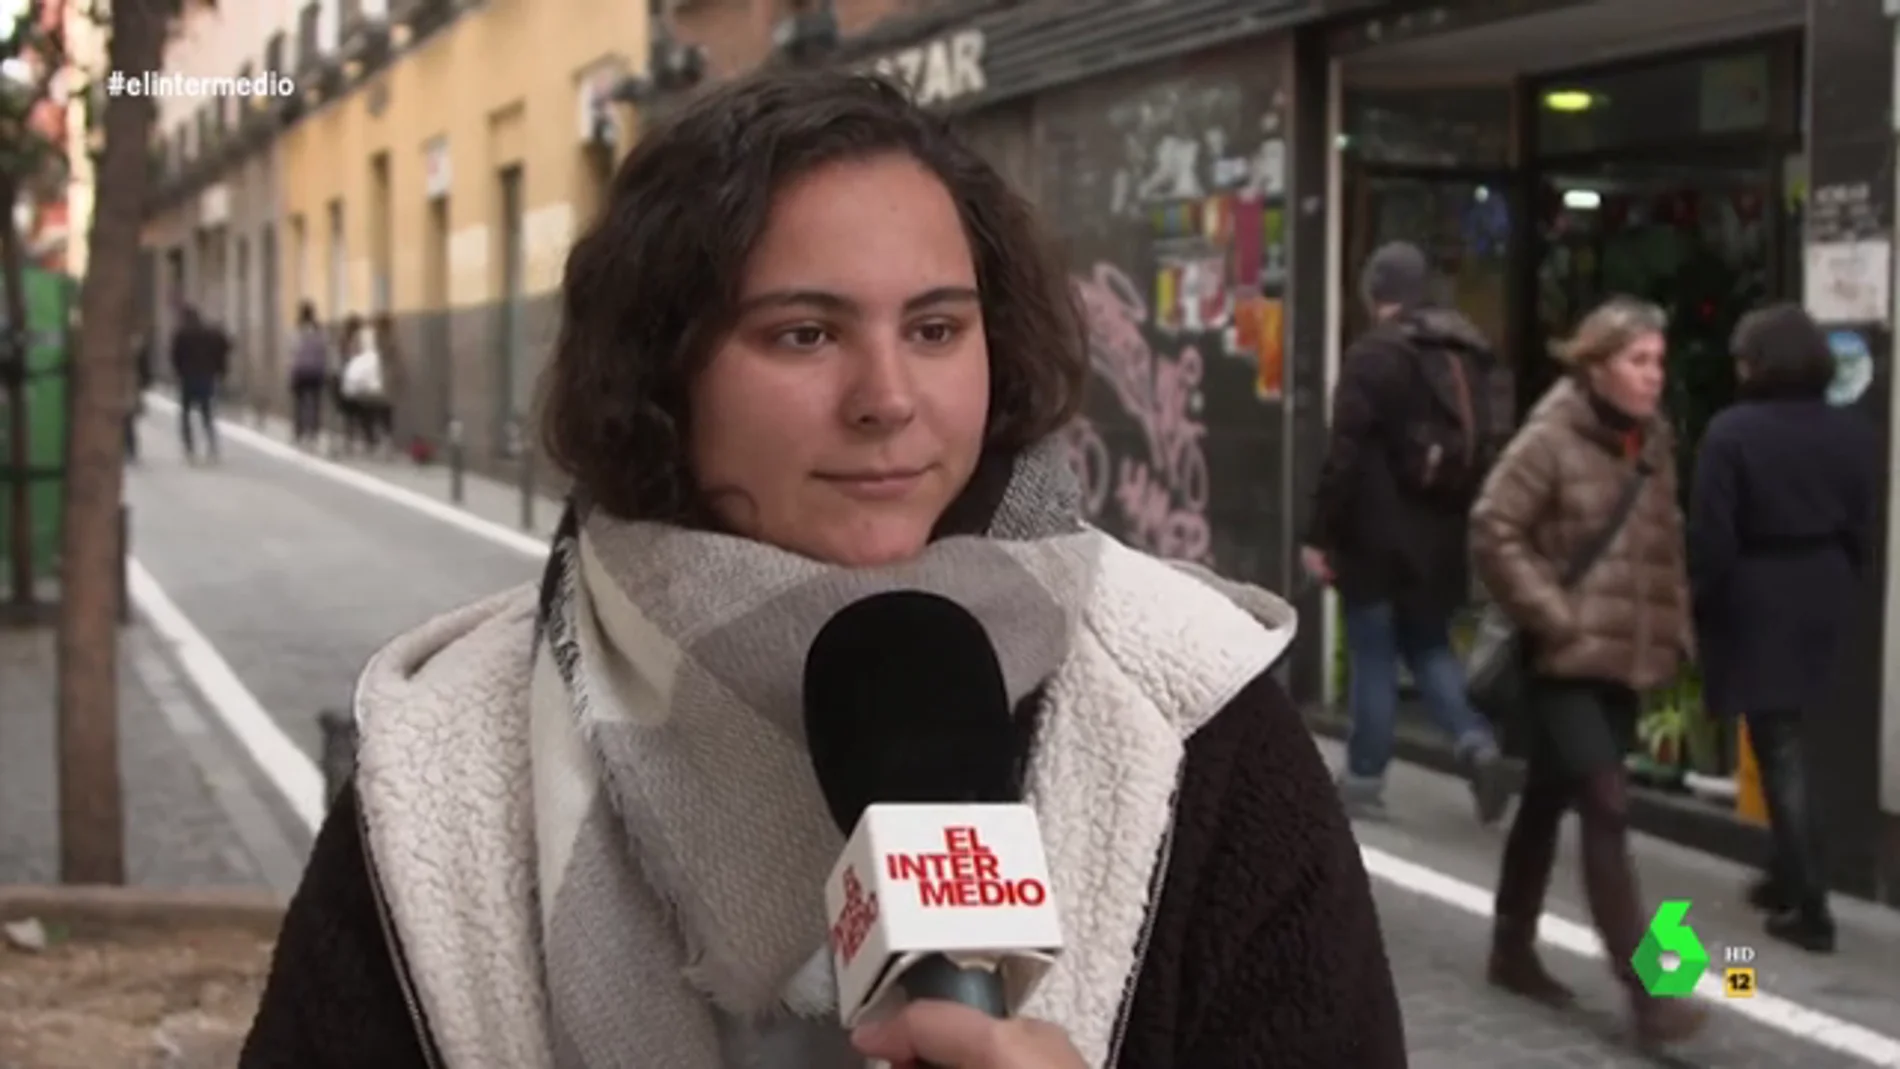 Los trucos de los jóvenes españoles para aumentar su paga: "Compro dos barras de pan y me quedo con el resto"